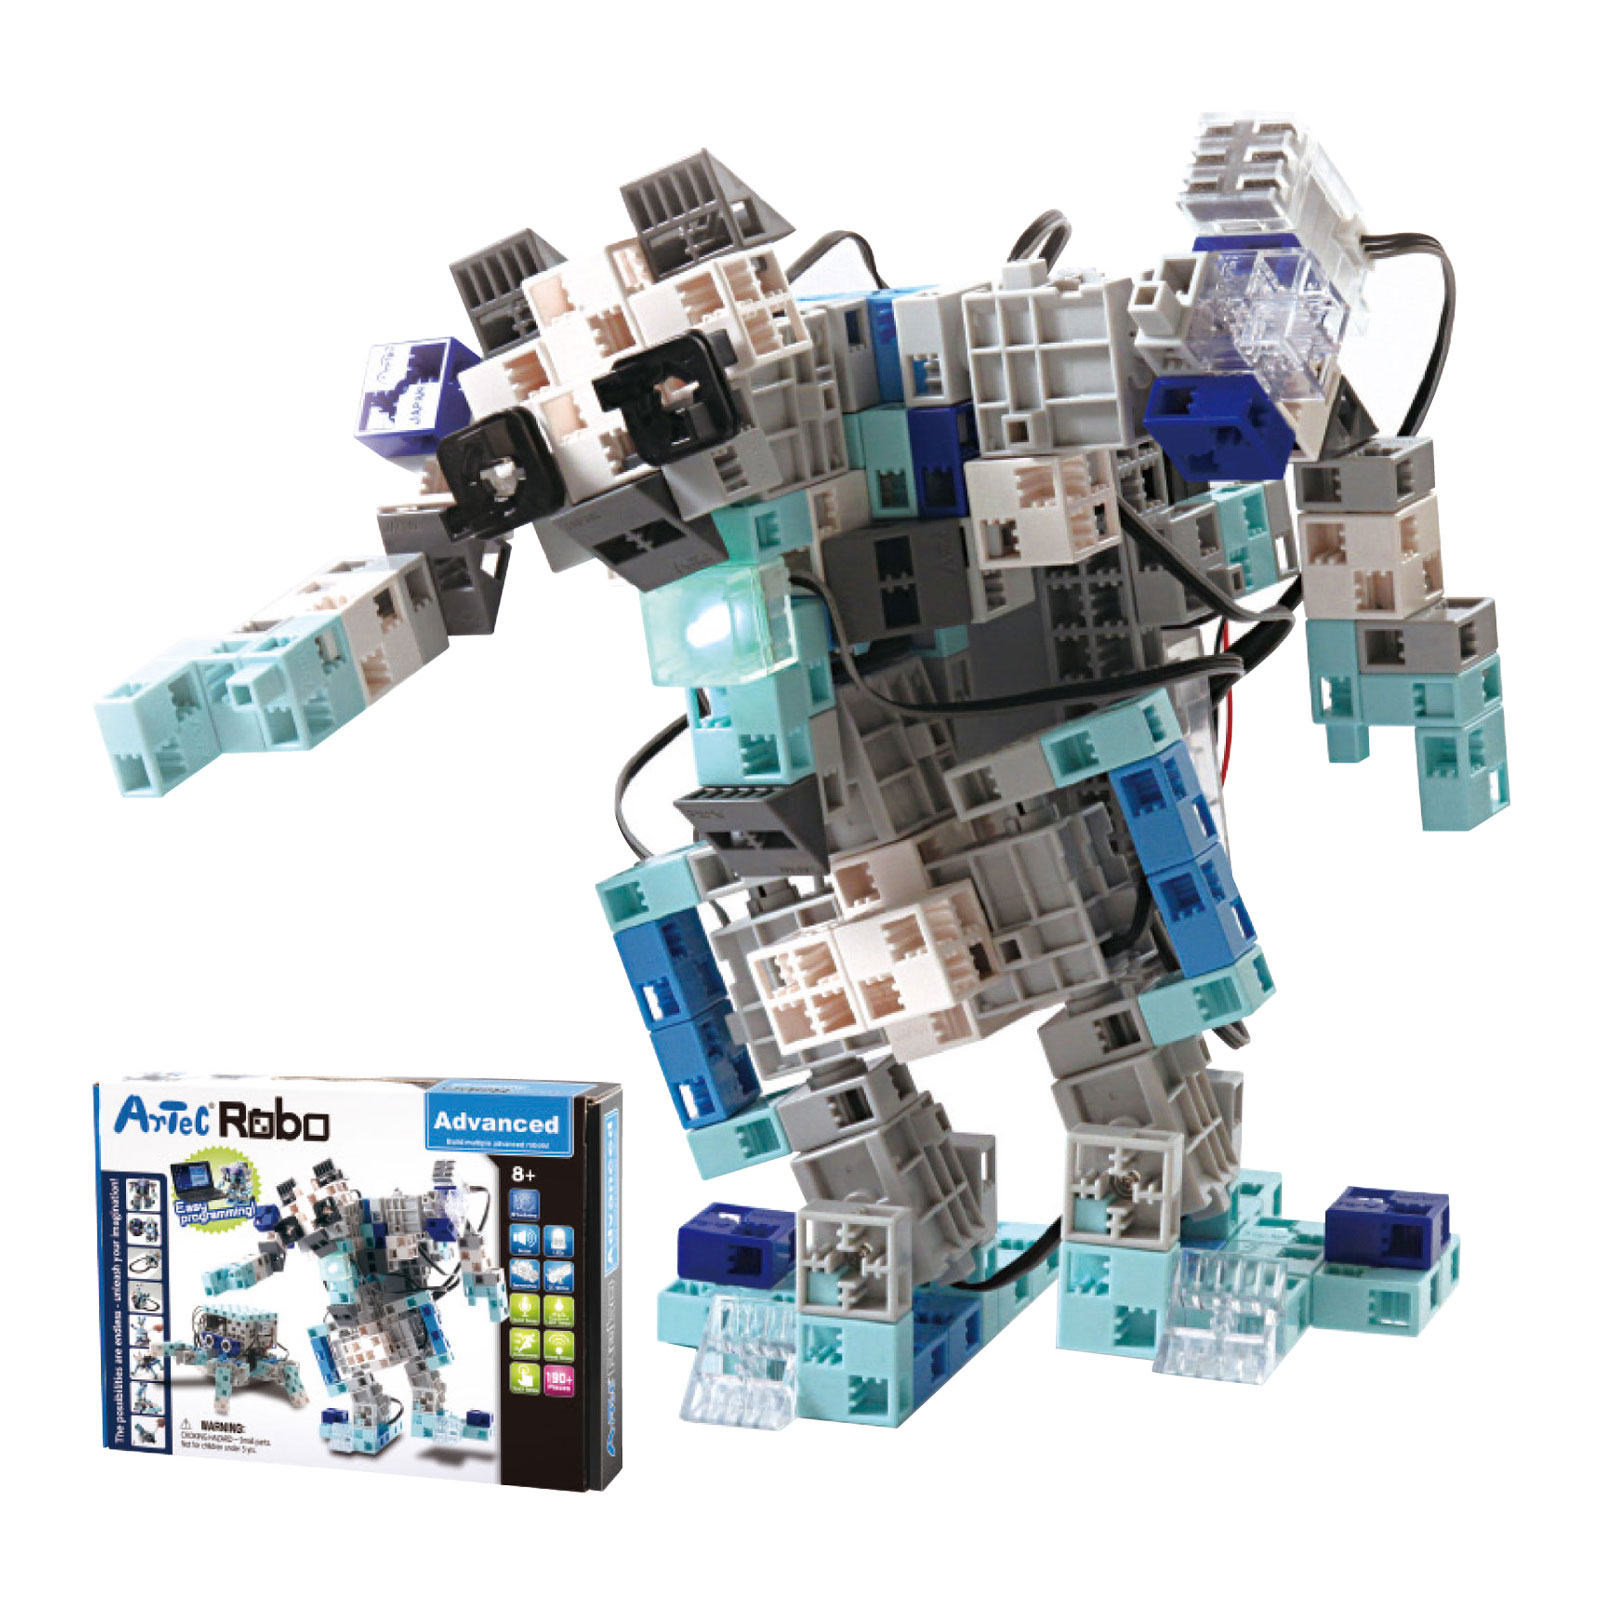 プログラミング ロボット 小学生 中学生 アーテックロボ 2.0 基本